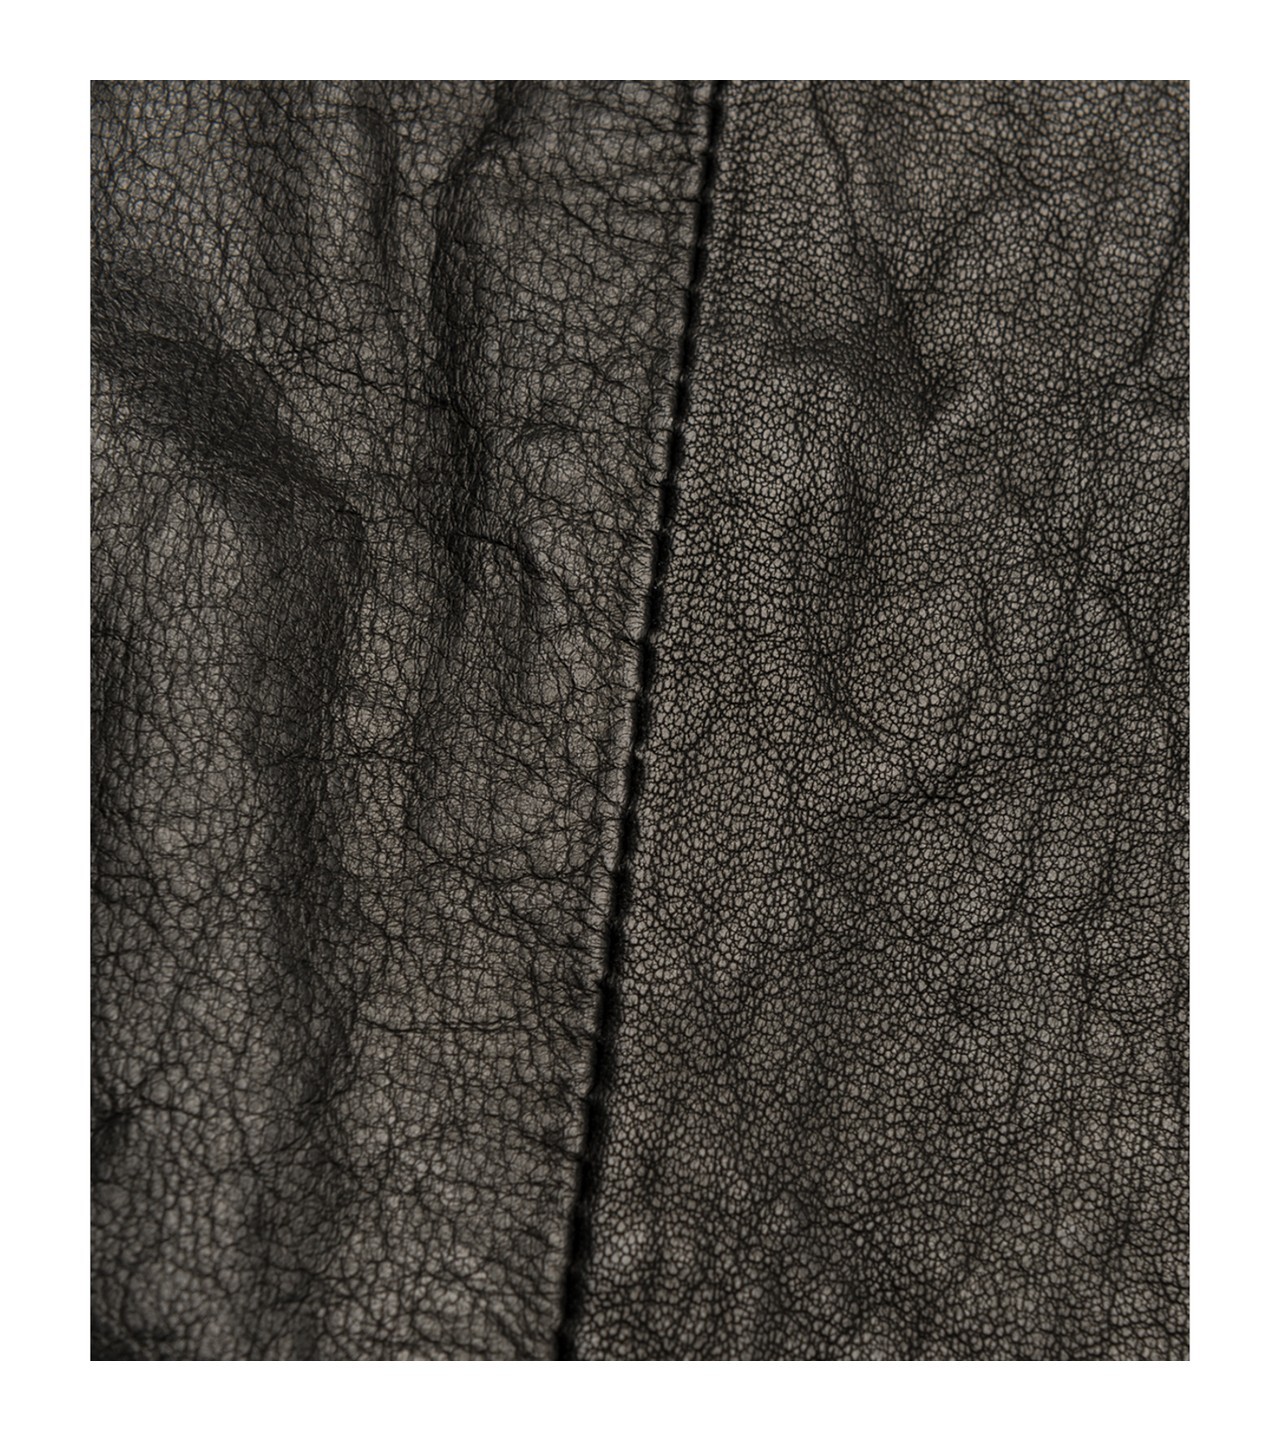 Replay stílusos női fekete gombos bőrkabát 2015.02.28 #79130 fotója